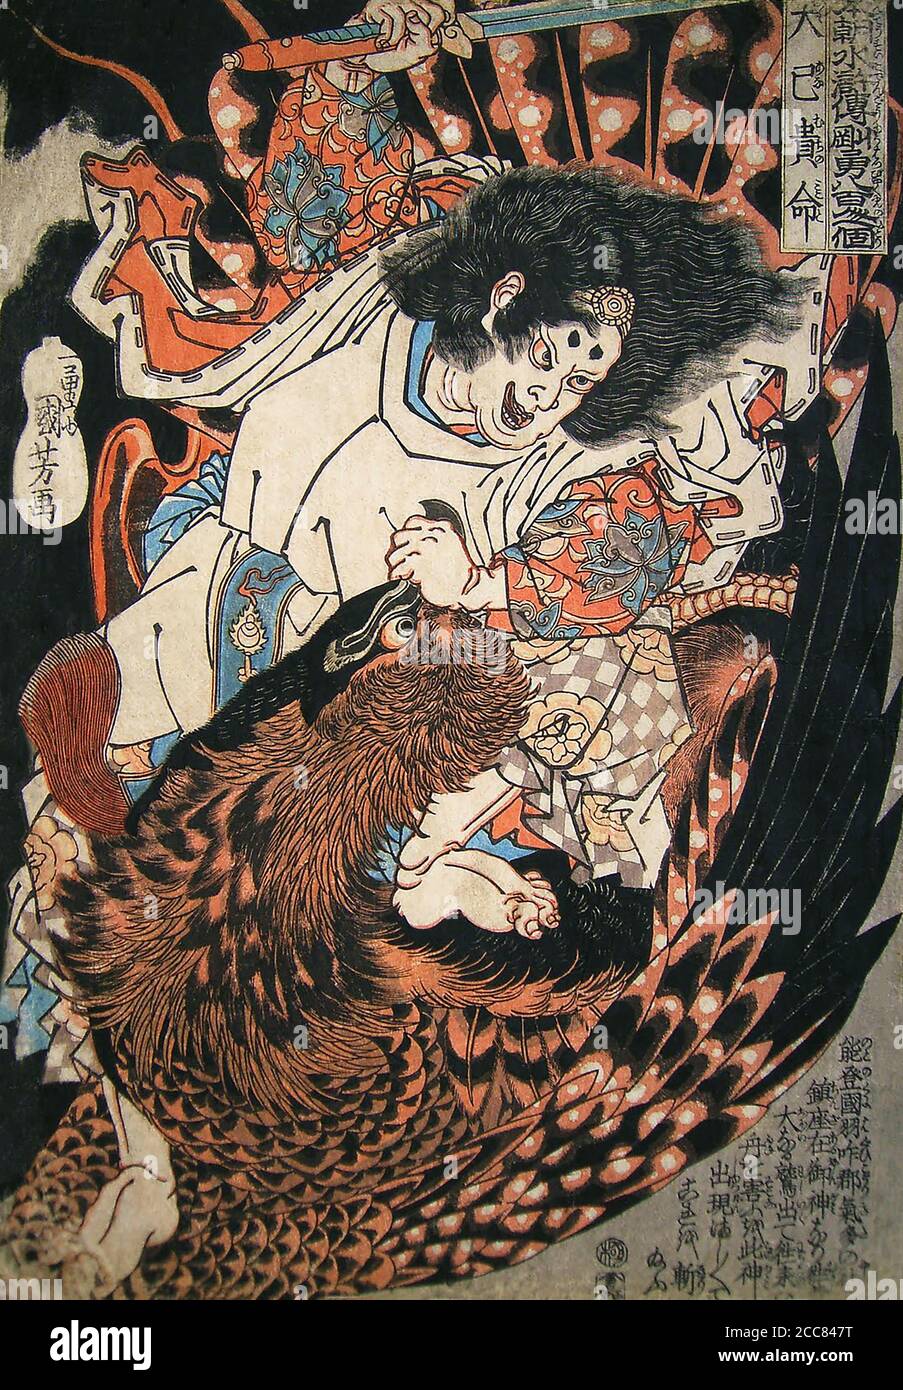 Japan: 'Oanamuchi no Mikoto'. Aus der Serie 'Achthundert Helden des japanischen Shuihuzhuan' von Utagawa Kuniyoshi (1797-1863), c.. 1830. Utagawa Kuniyoshi (1. Januar 1798 - 14. April 1861) war einer der letzten großen Meister des japanischen Ukiyo-e-Stils von Holzschnitt und Malerei. Er ist mit der Utagawa Schule verbunden. Das Spektrum der bevorzugten Themen von Kuniyoshi umfasste viele Genres: Landschaften, schöne Frauen, Kabuki-Schauspieler, Katzen und mythische Tiere. Er ist bekannt für Darstellungen der Kämpfe von Samurai und legendären Helden. Sein Werk wurde von westlichen Einflüssen in la beeinflusst Stockfoto